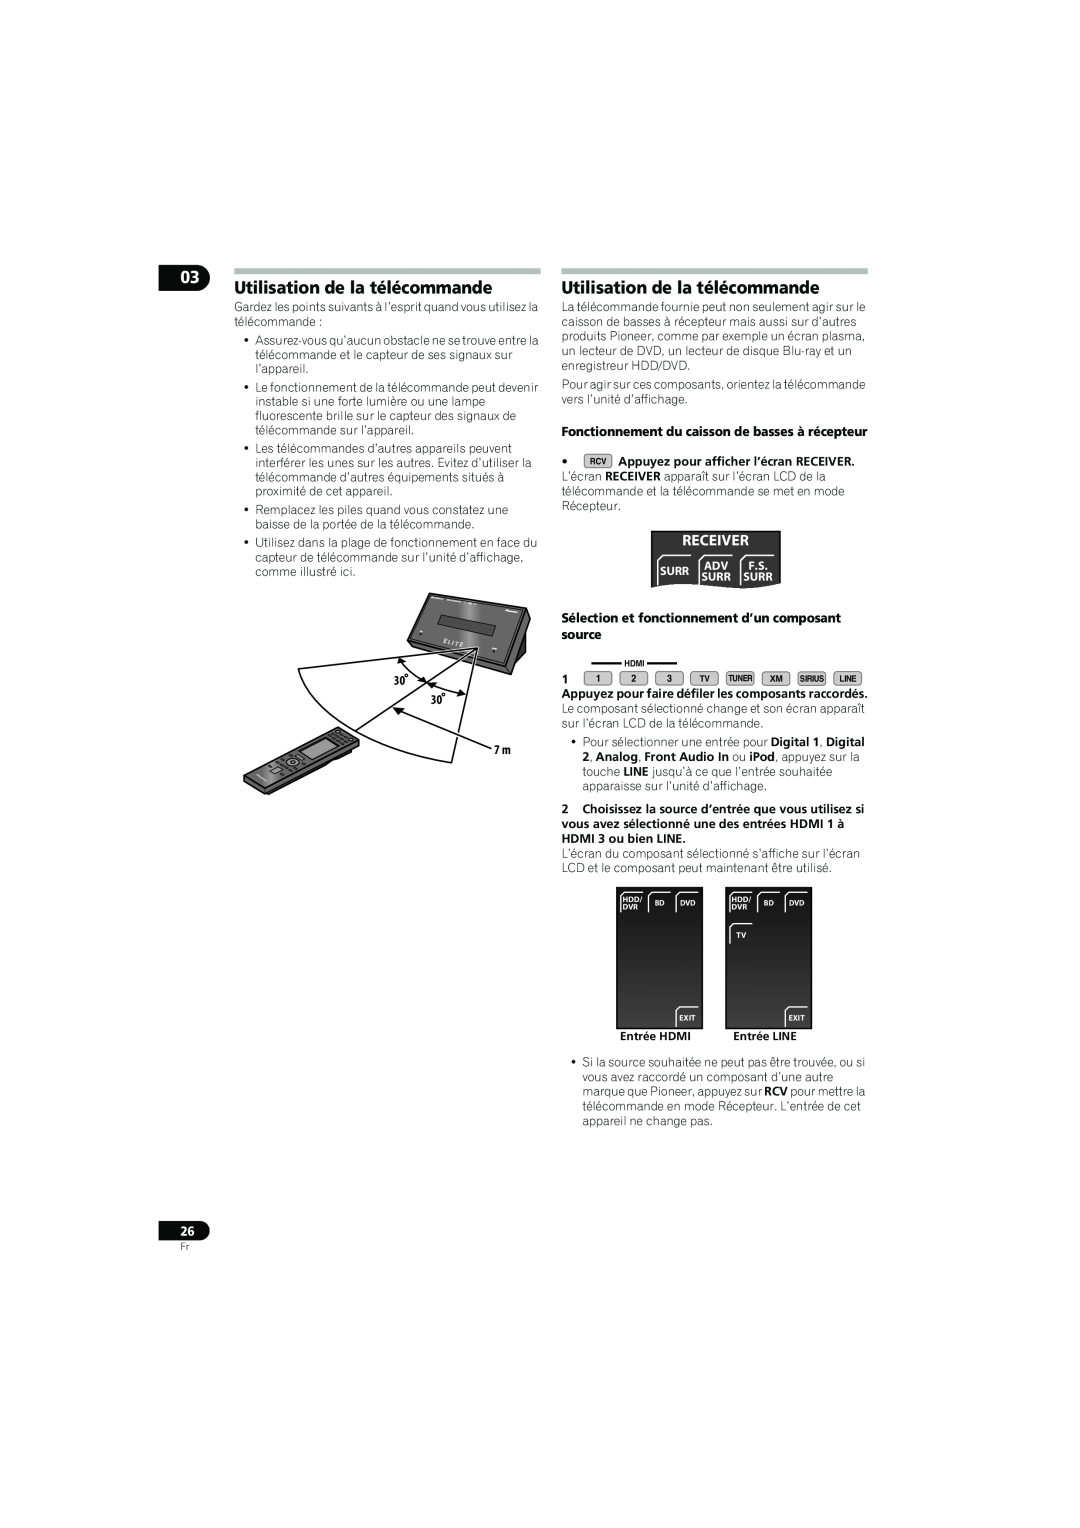 Pioneer SX-LX70SW Utilisation de la télécommande, Fonctionnement du caisson de basses à récepteur, Receiver, Surr 